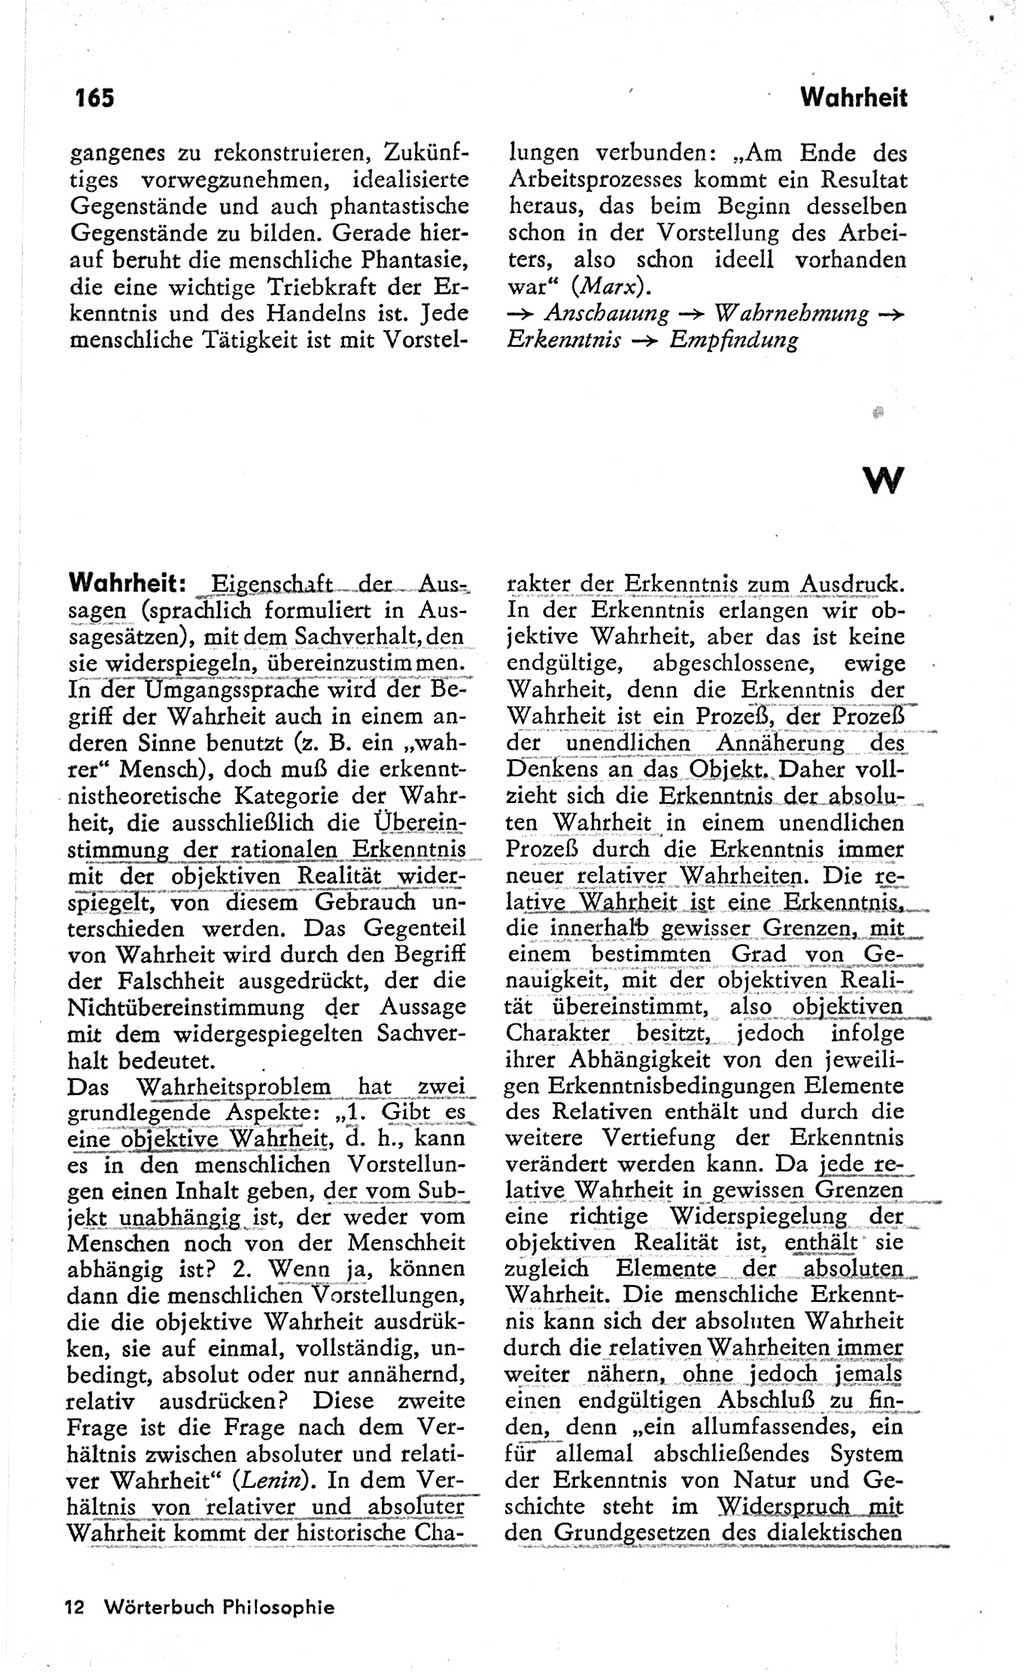 Kleines Wörterbuch der marxistisch-leninistischen Philosophie [Deutsche Demokratische Republik (DDR)] 1966, Seite 165 (Kl. Wb. ML Phil. DDR 1966, S. 165)